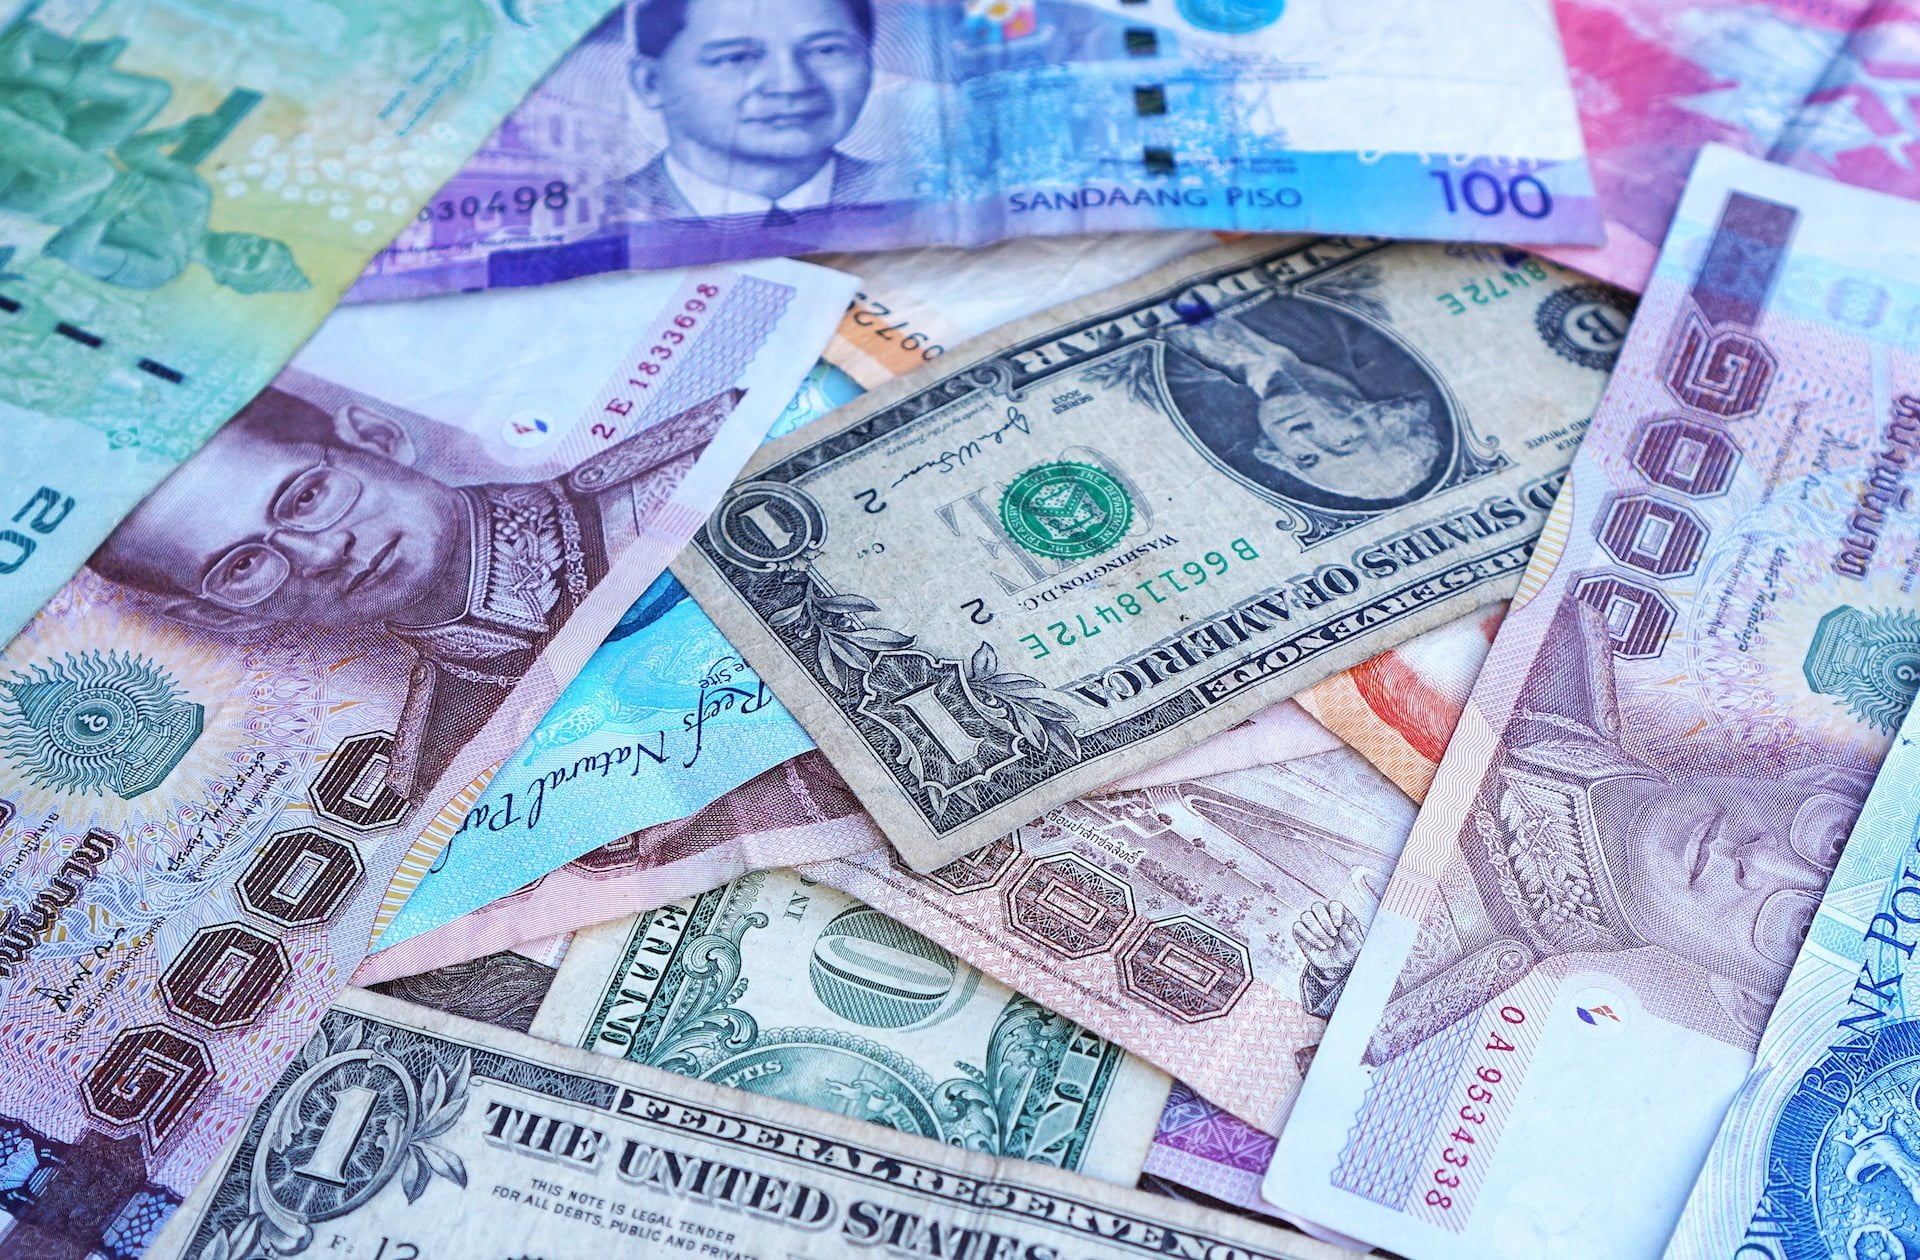 澳門法定貨幣「澳門幣」的紙鈔、硬幣面額與匯率介紹